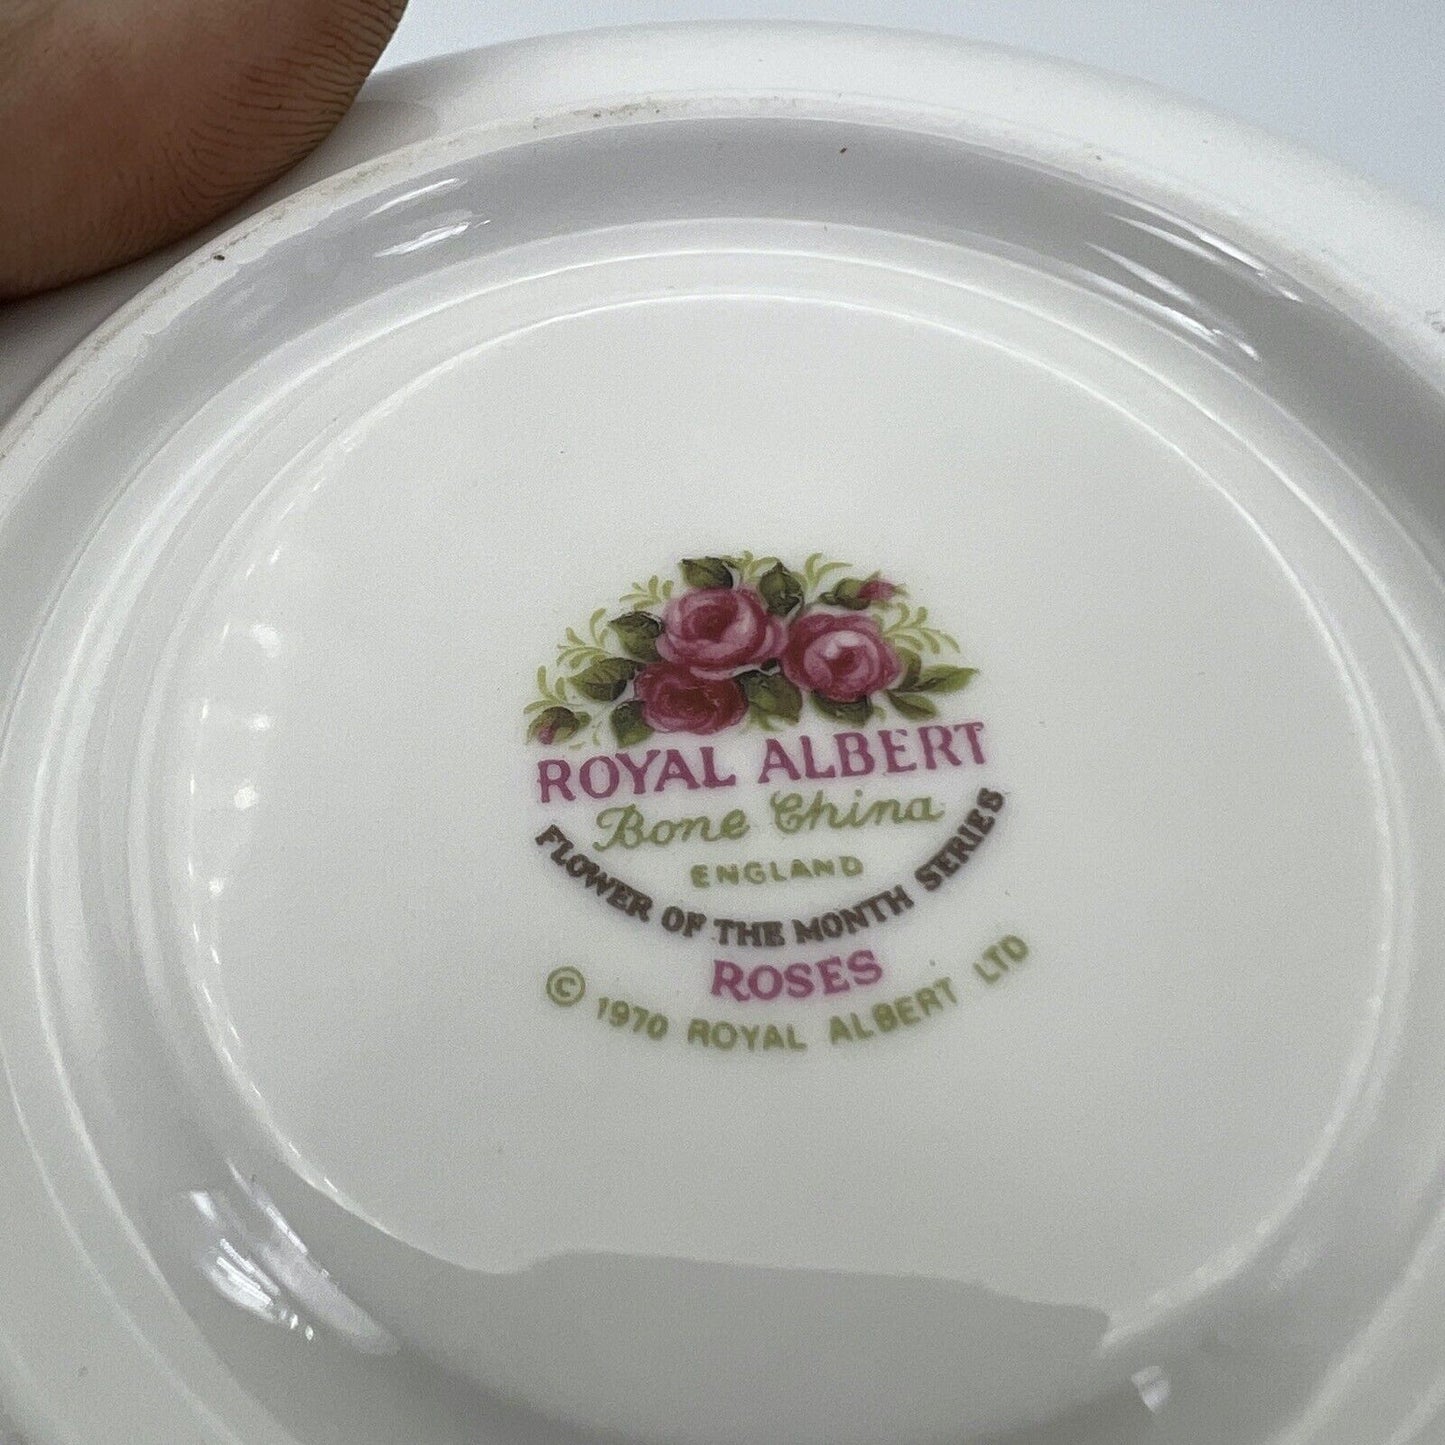 Tazza da tè The in porcellana Royal Albert con mese tazzina inglese GIUGNO 1970